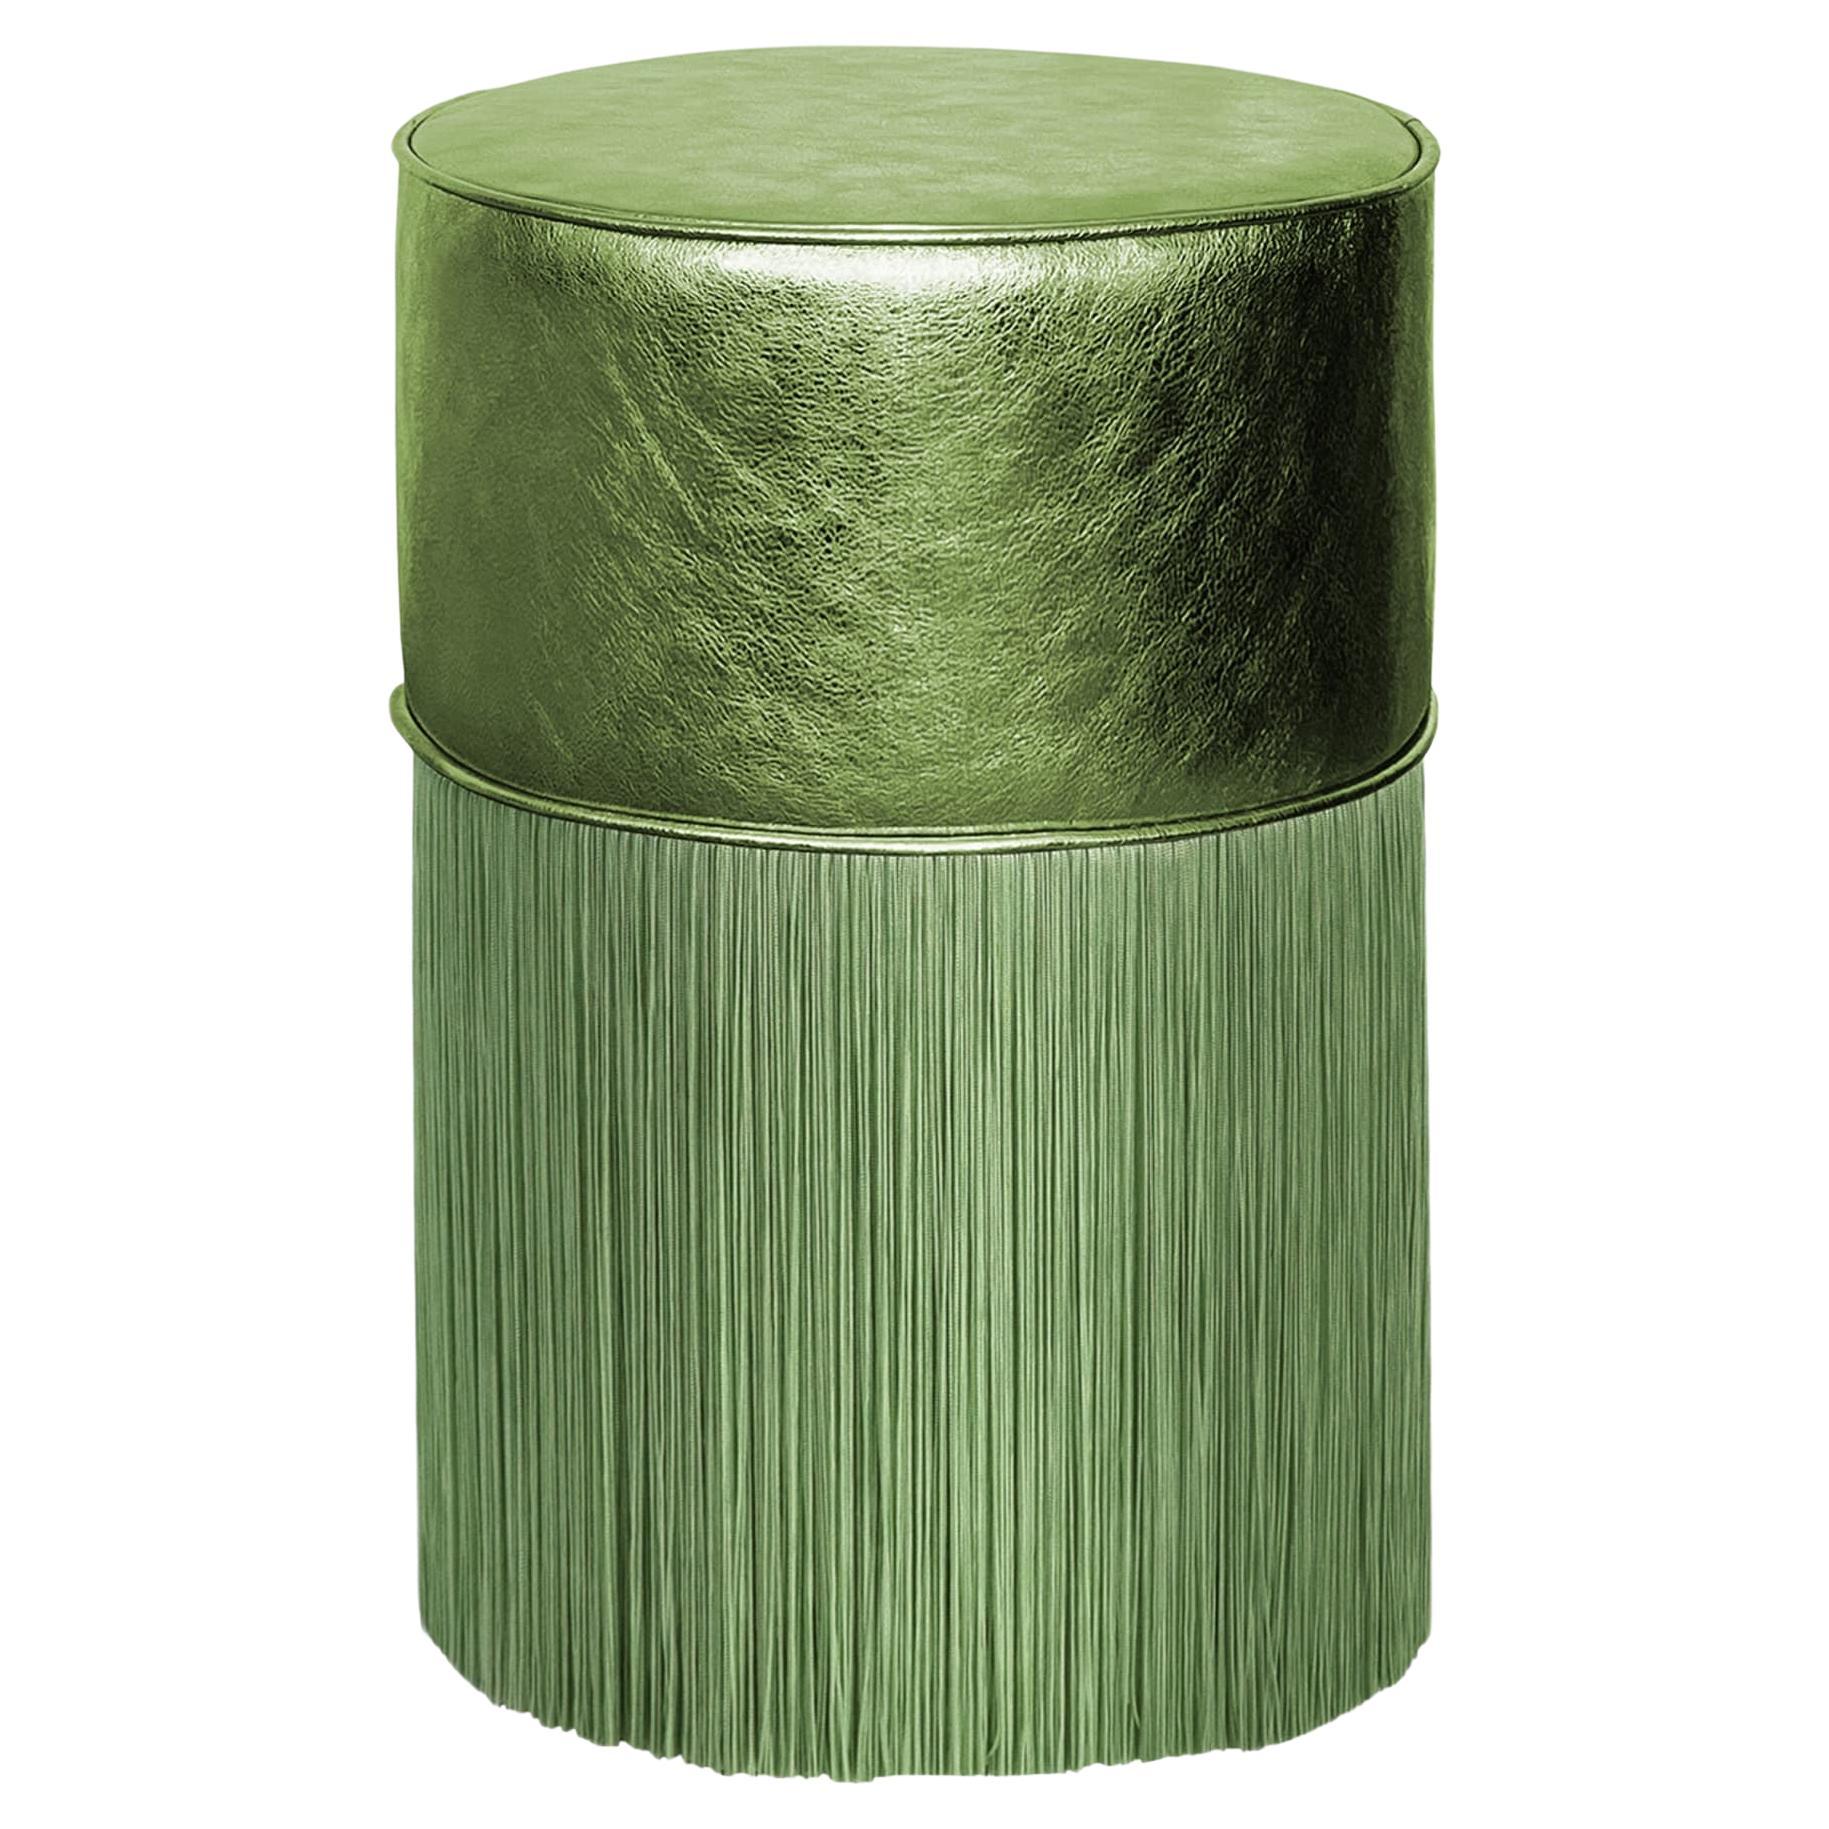 Glänzender grüner Metallic-Lederhocker von Lorenza Bozzoli